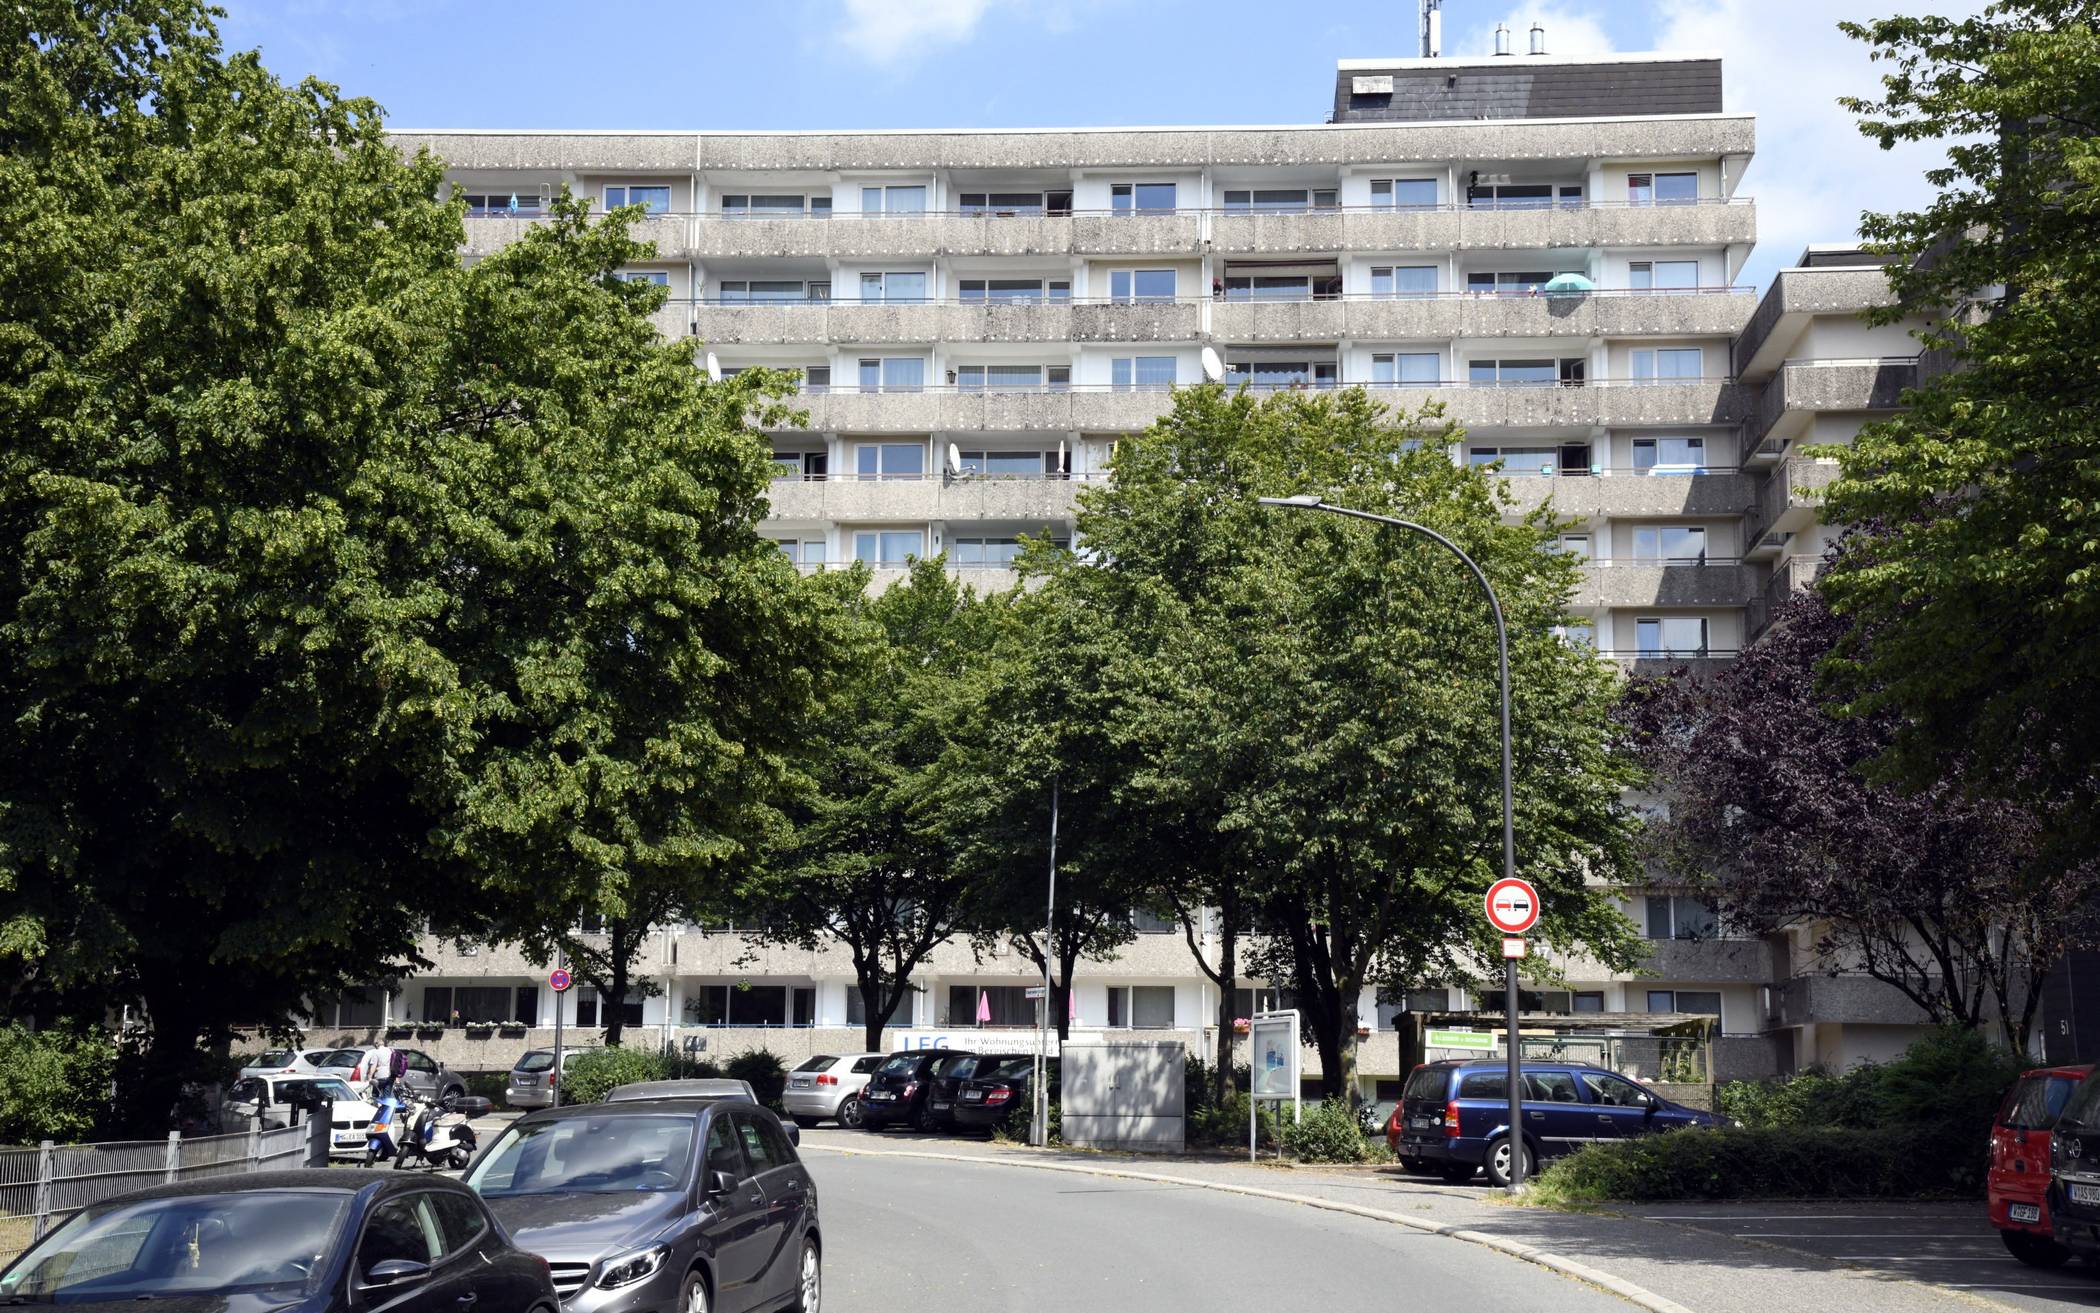 LEG verkauft 418 Wohnungen in Wuppertal